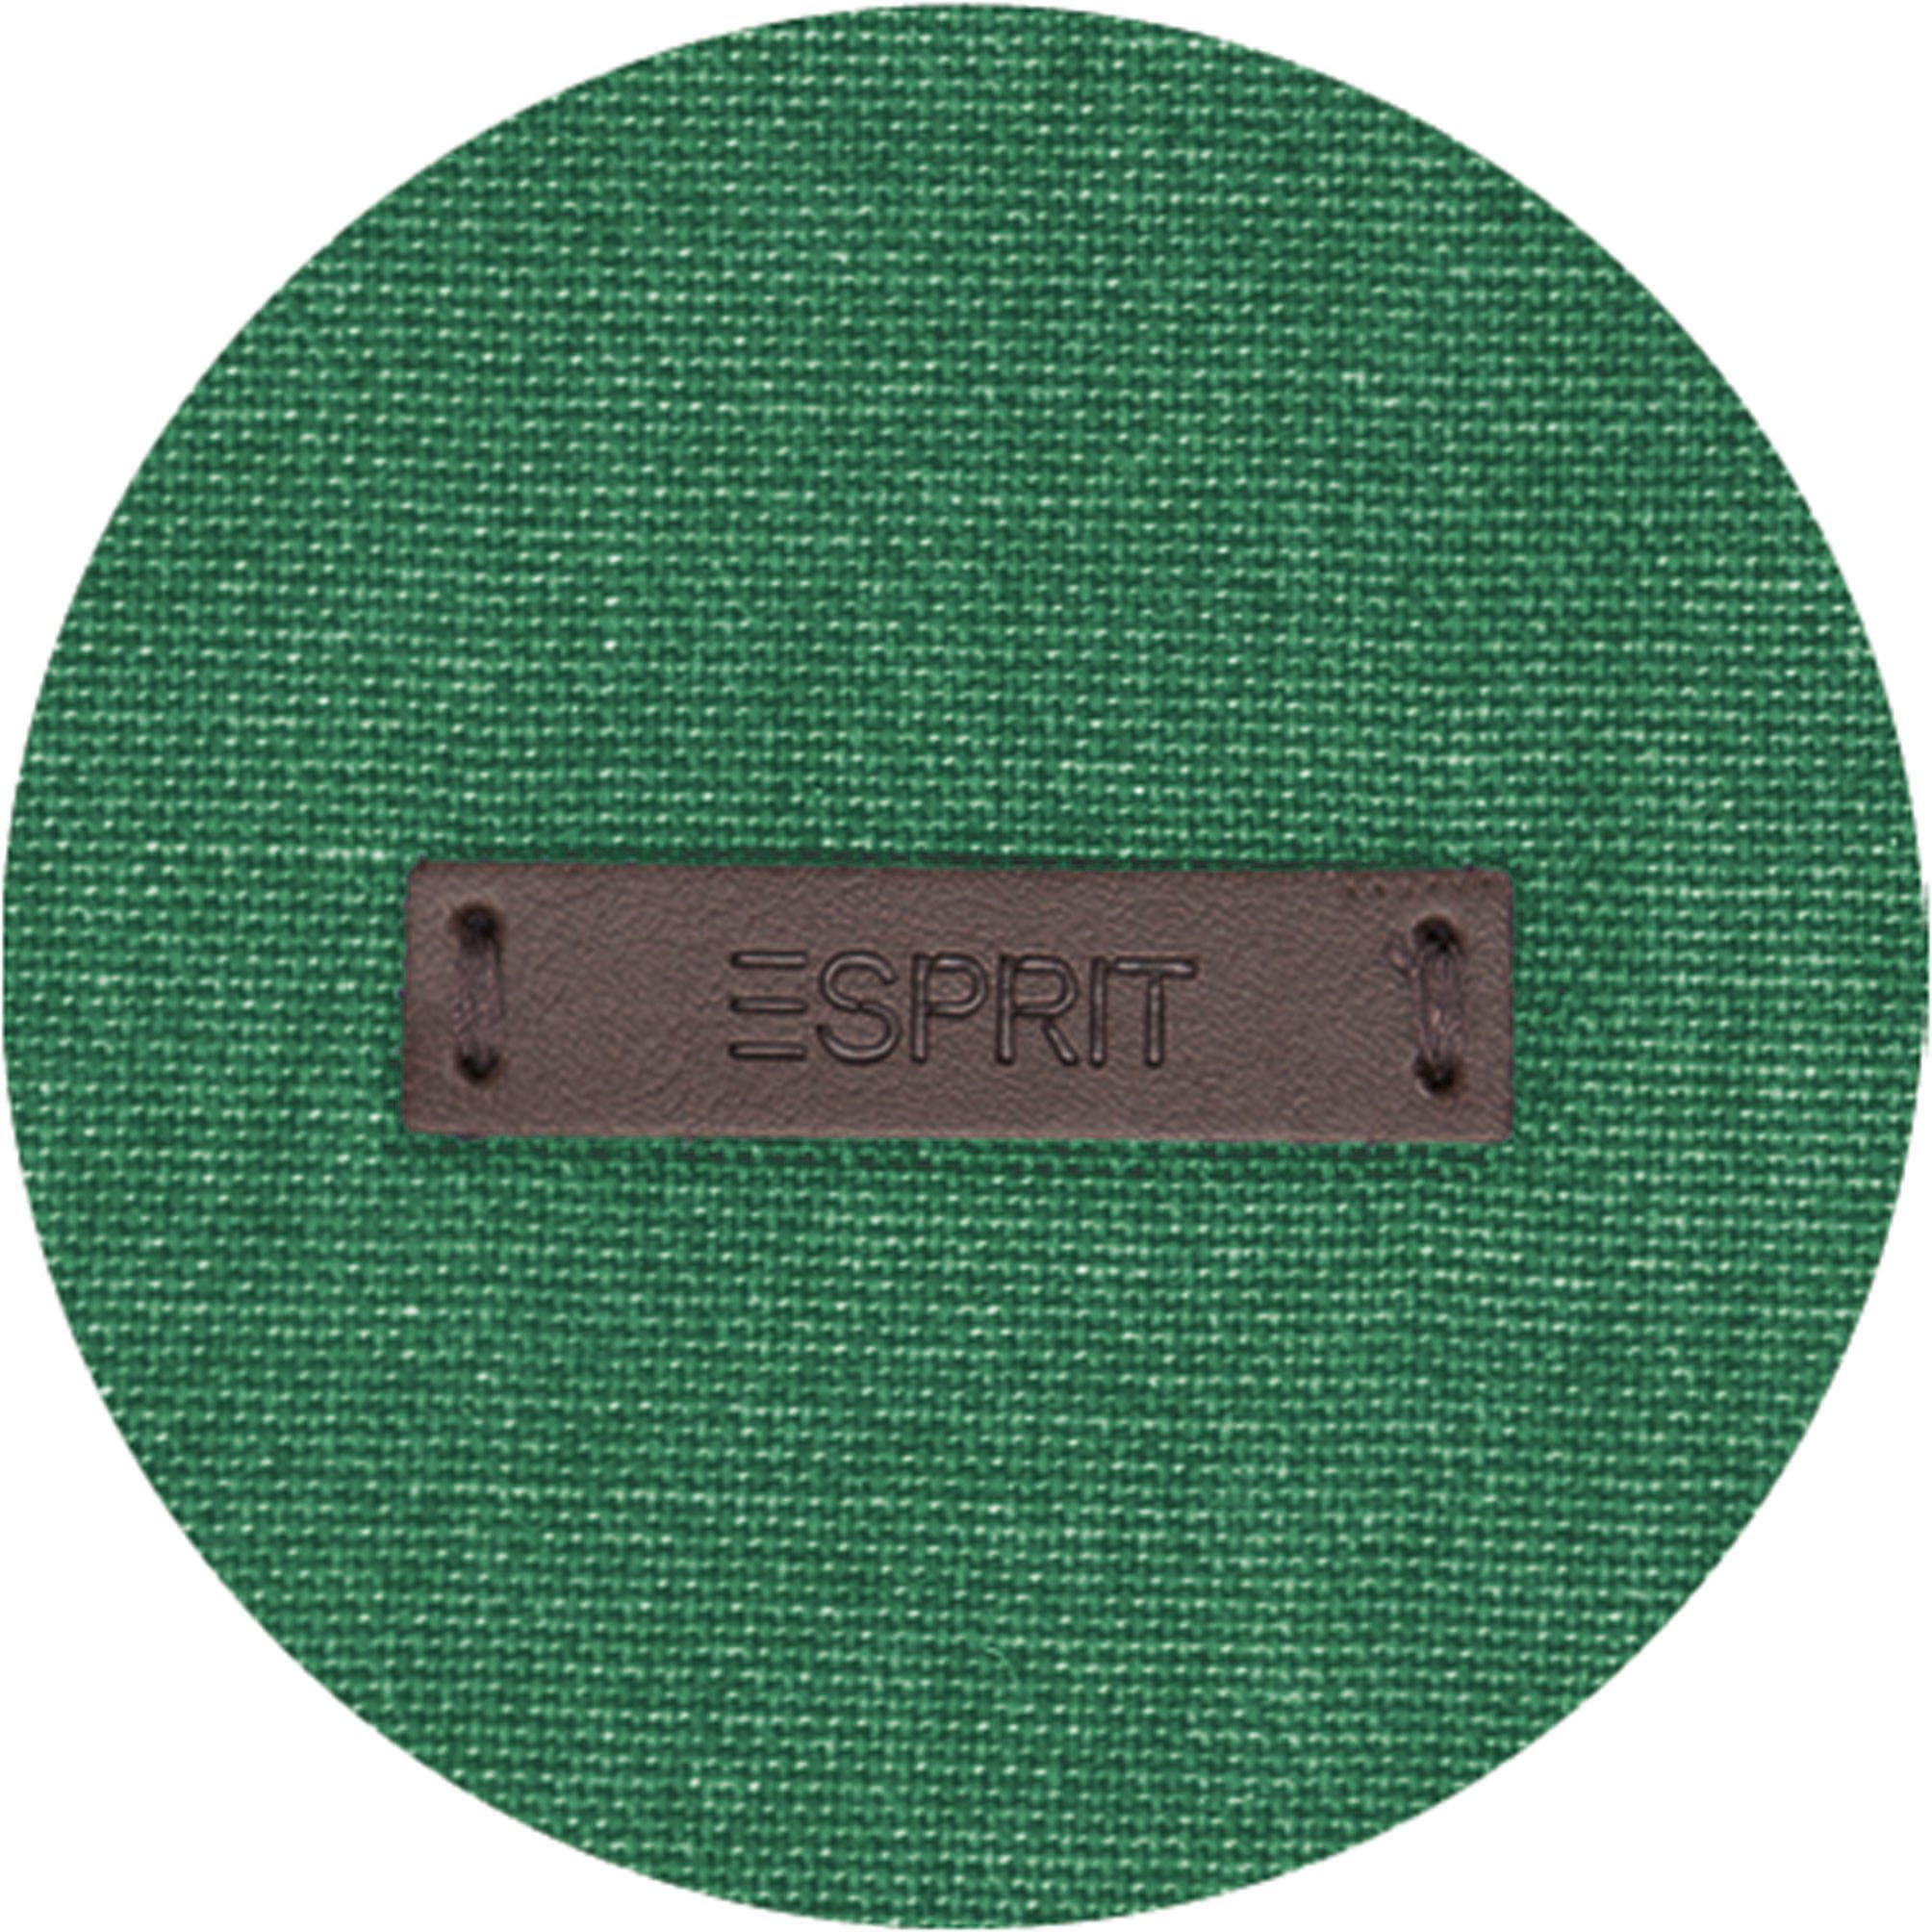 grün/green/dunkelgrün Schlaufen blickdicht, nachhaltiger (1 Baumwolle, verdeckte blickdicht aus Vorhang Neo, Esprit, St),